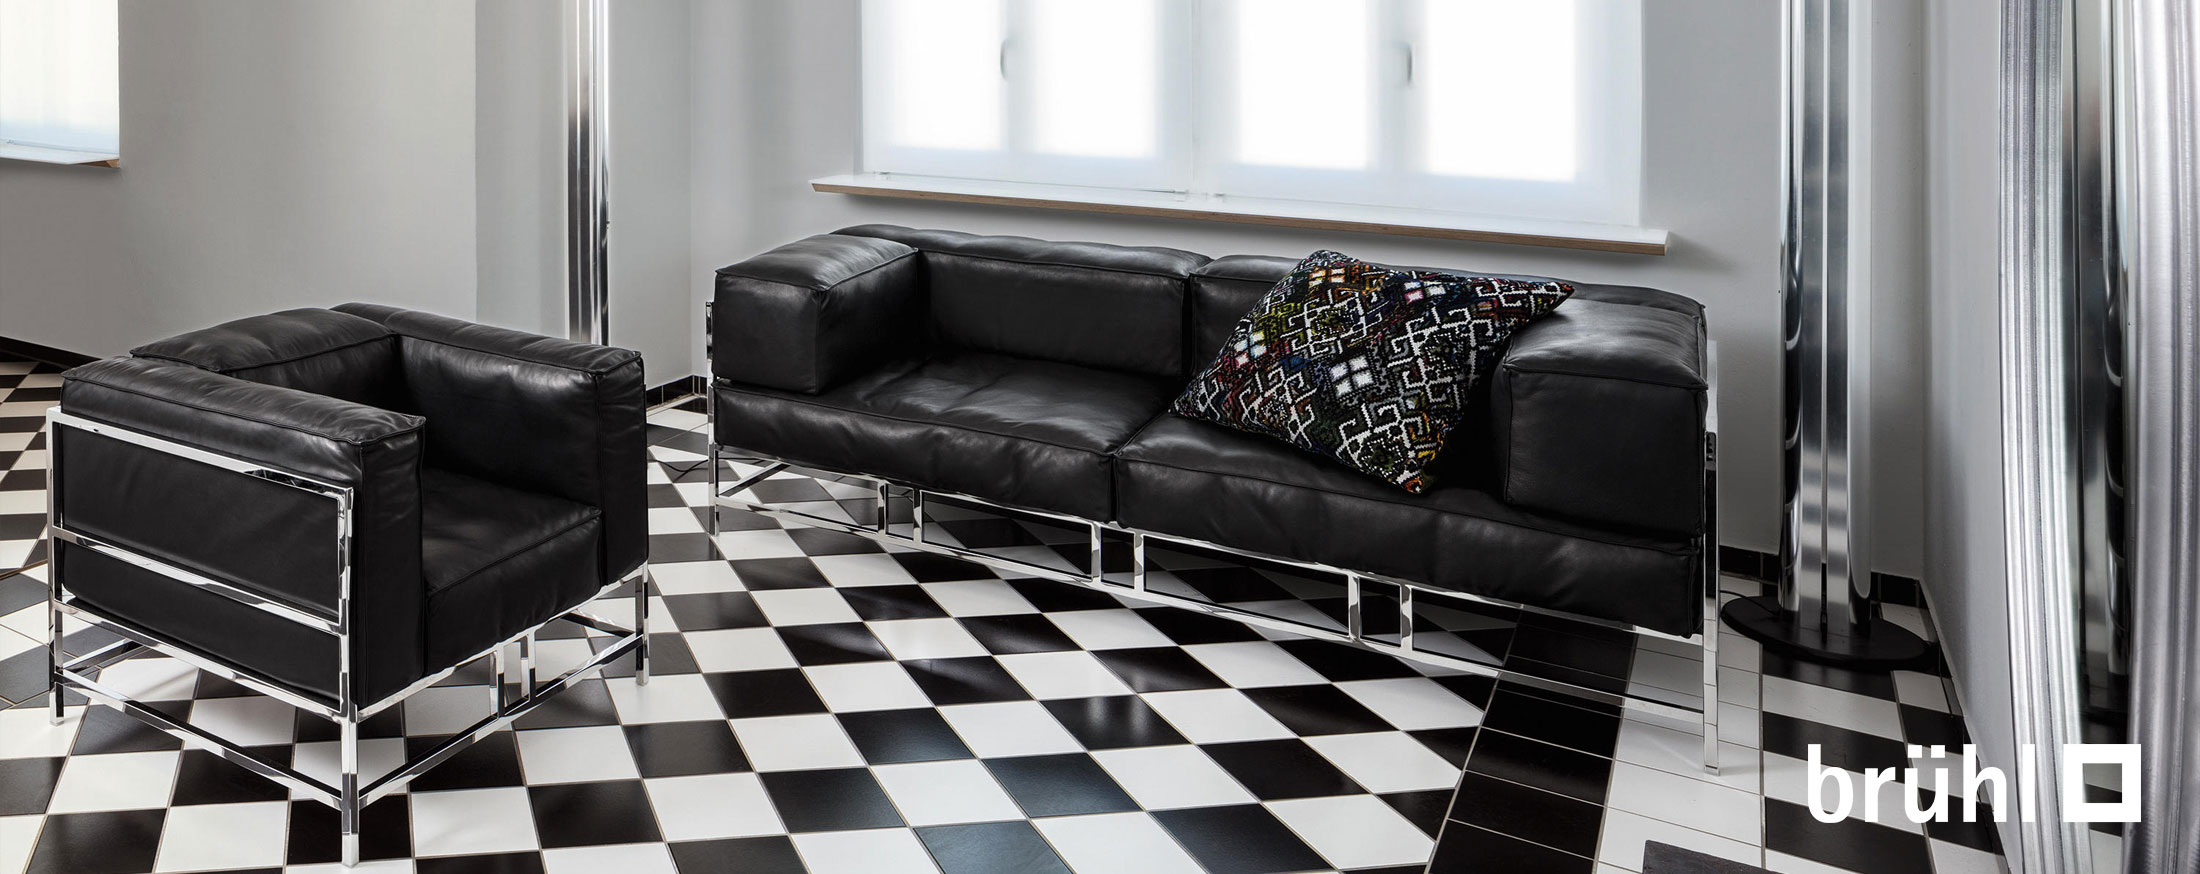 Brühl Möbel - die perfekte Verbindung von Funktion und Design